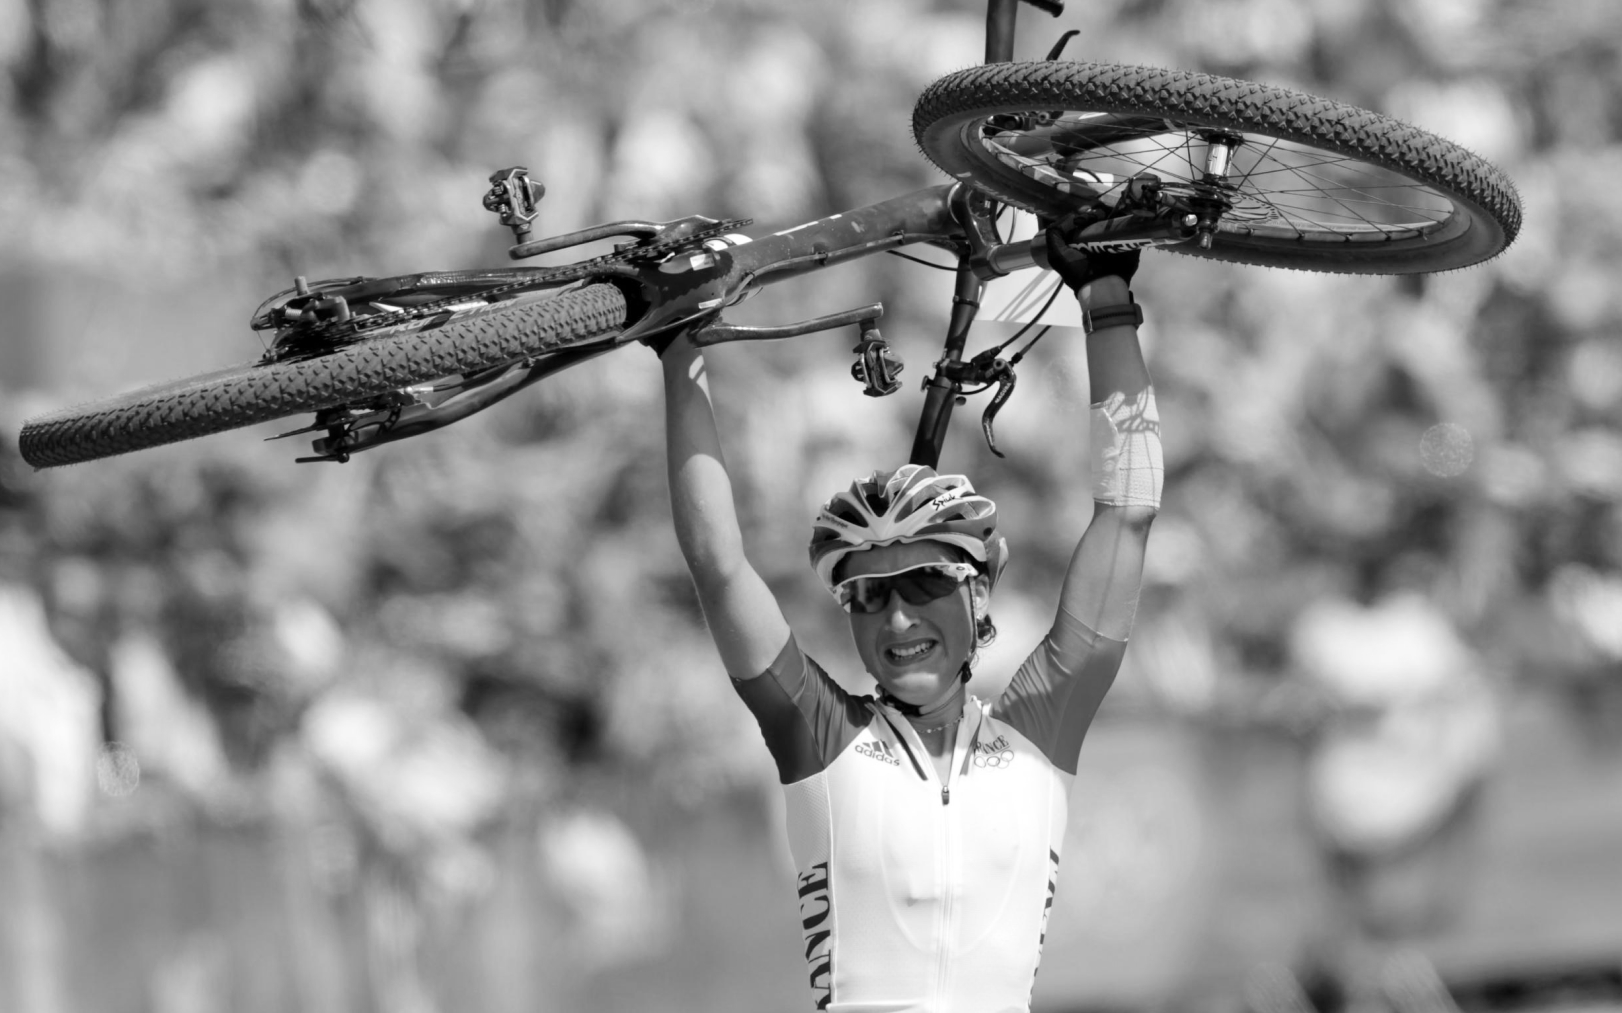 Le 11 août 2012, aux Jeux de Londres, Julie Bresset devient championne olympique de VTT cross-country à 23 ans. Icon Sport/Diener